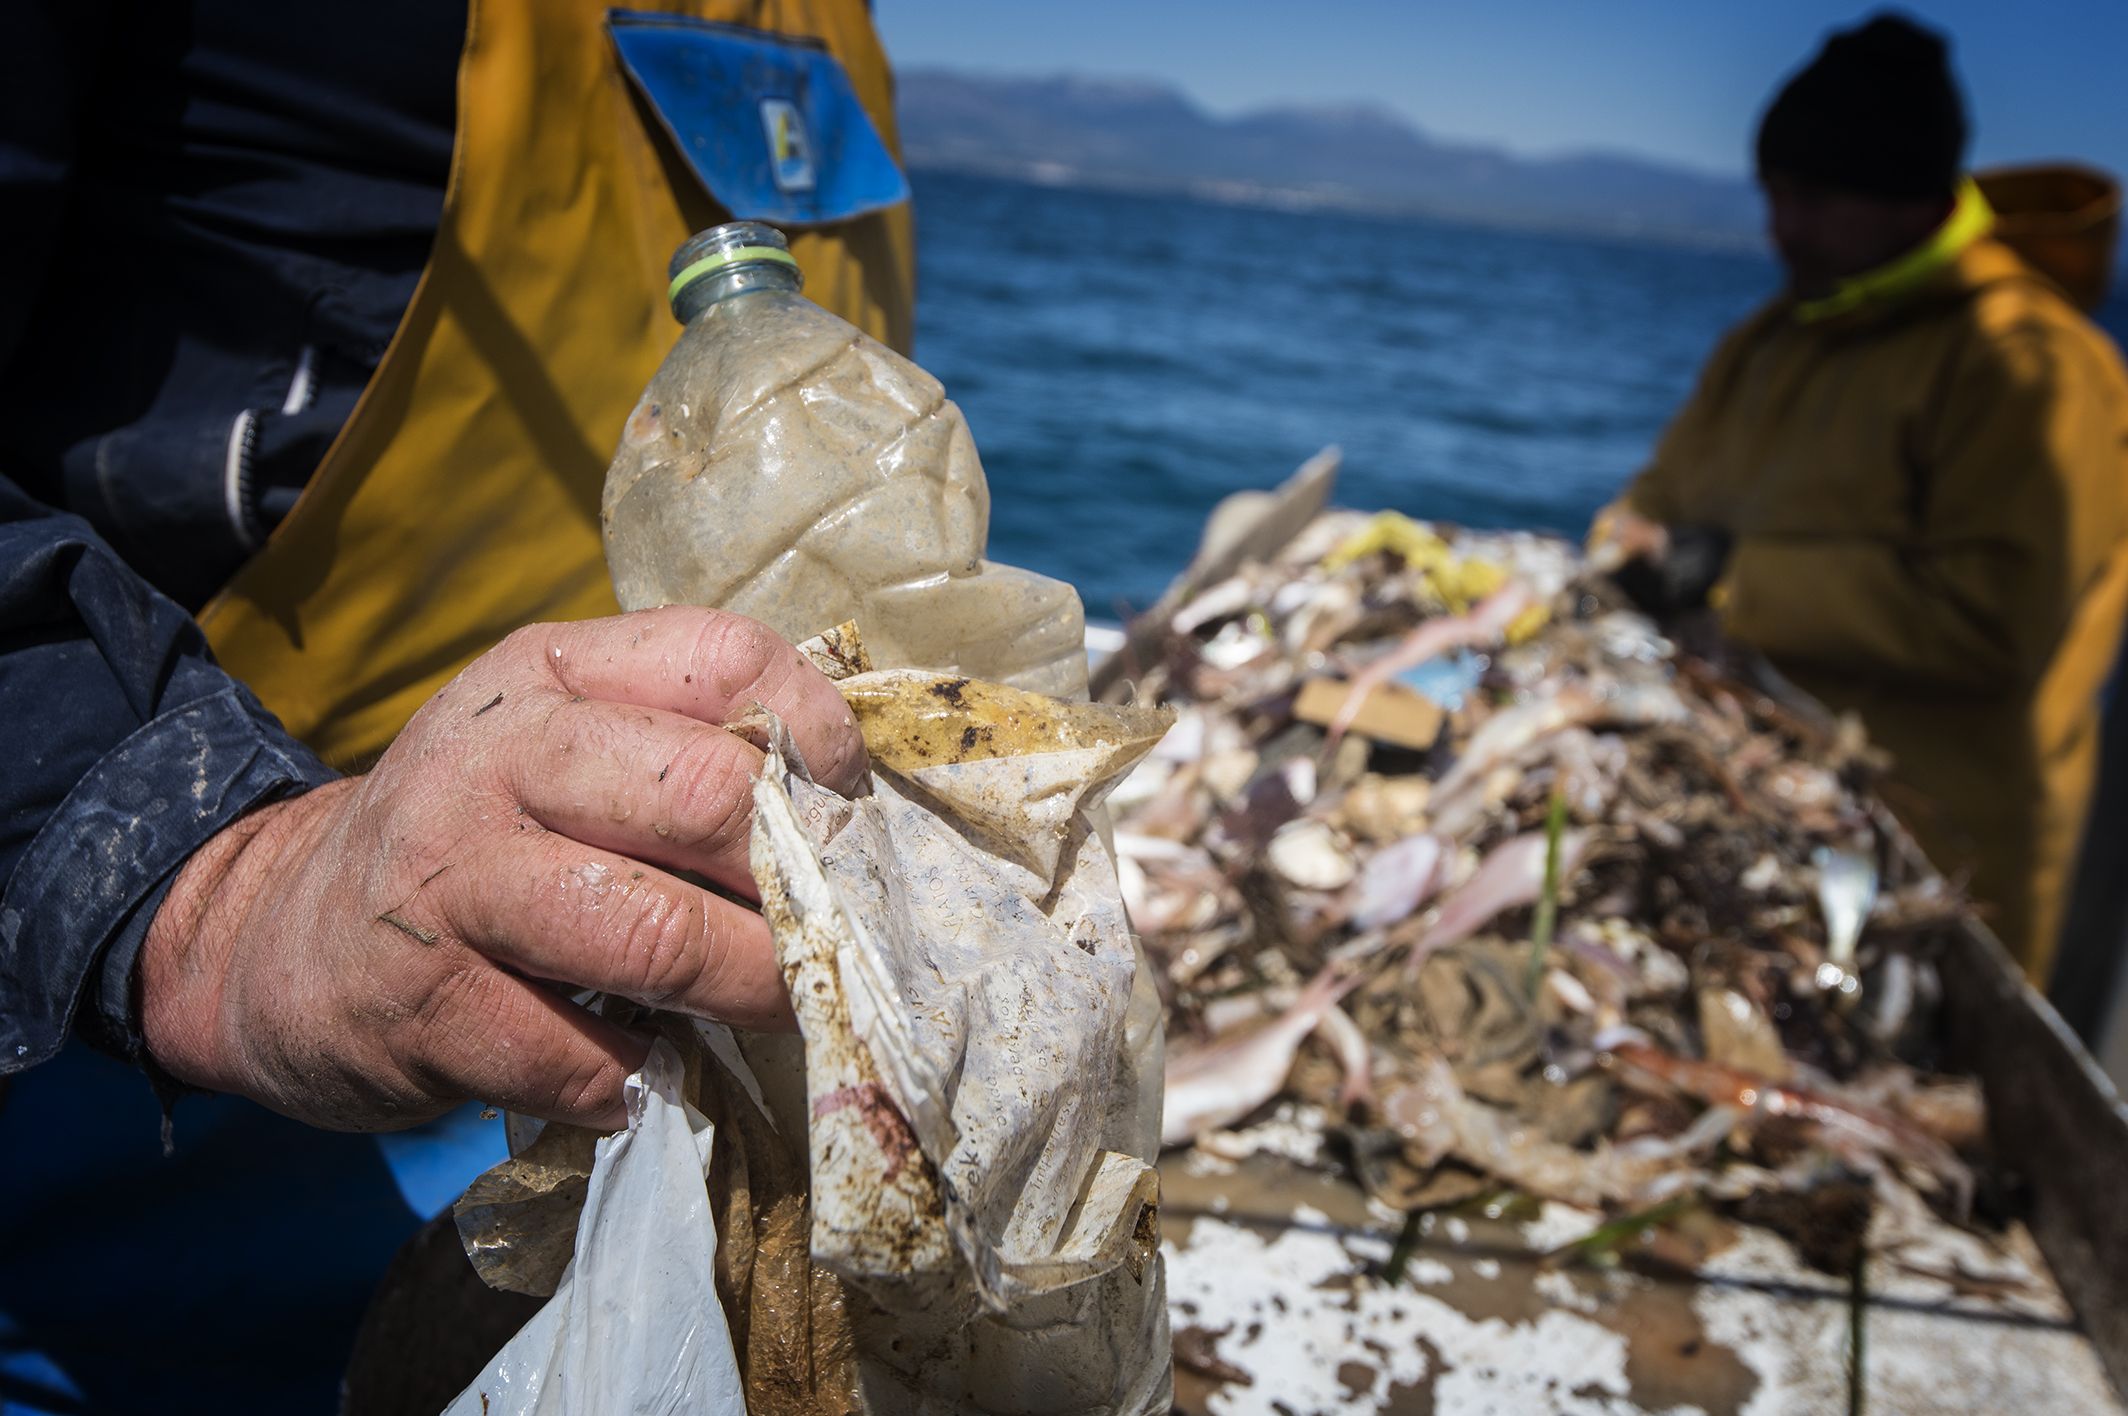 Un pescador de Cambrils (Tarragona) muestra parte de los desechos encontrados entre las capturas / Foto: Josep Cano